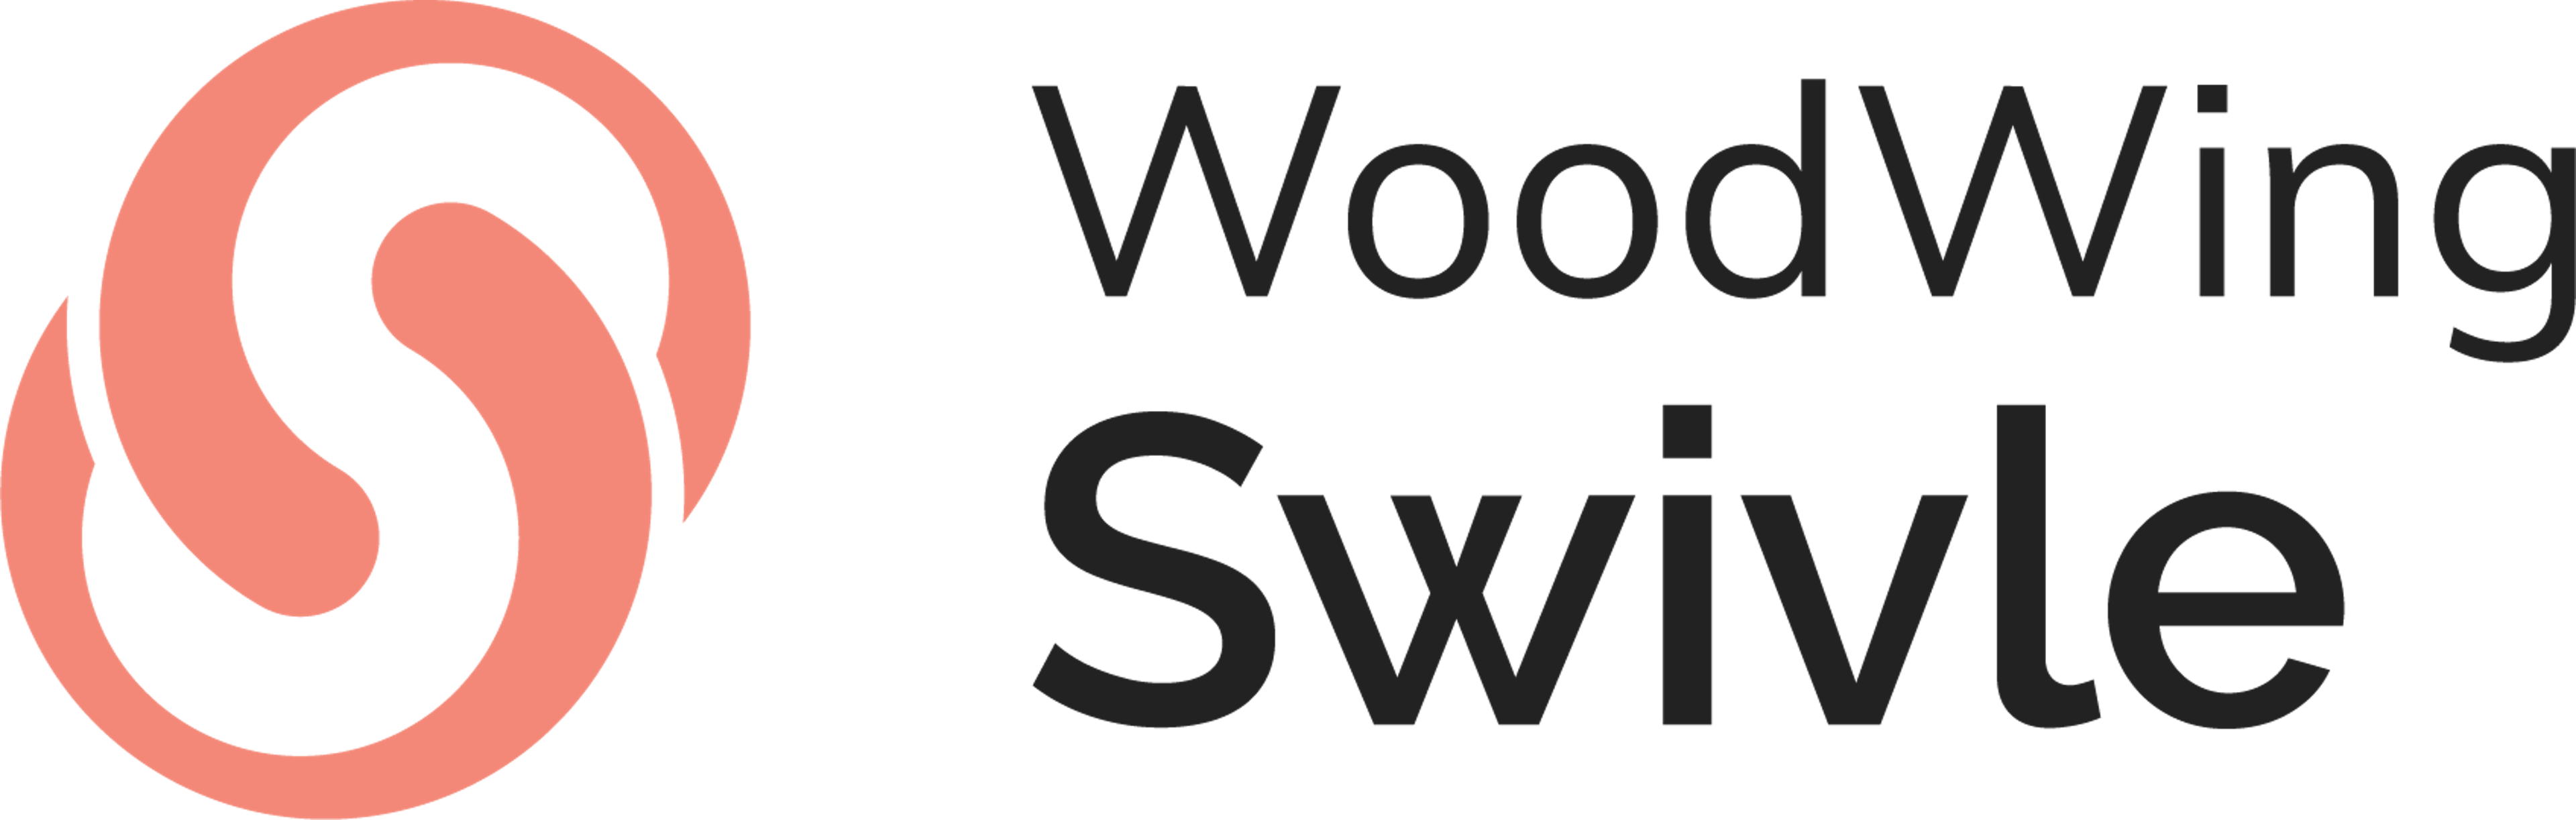 WoodWing Swivle Logo